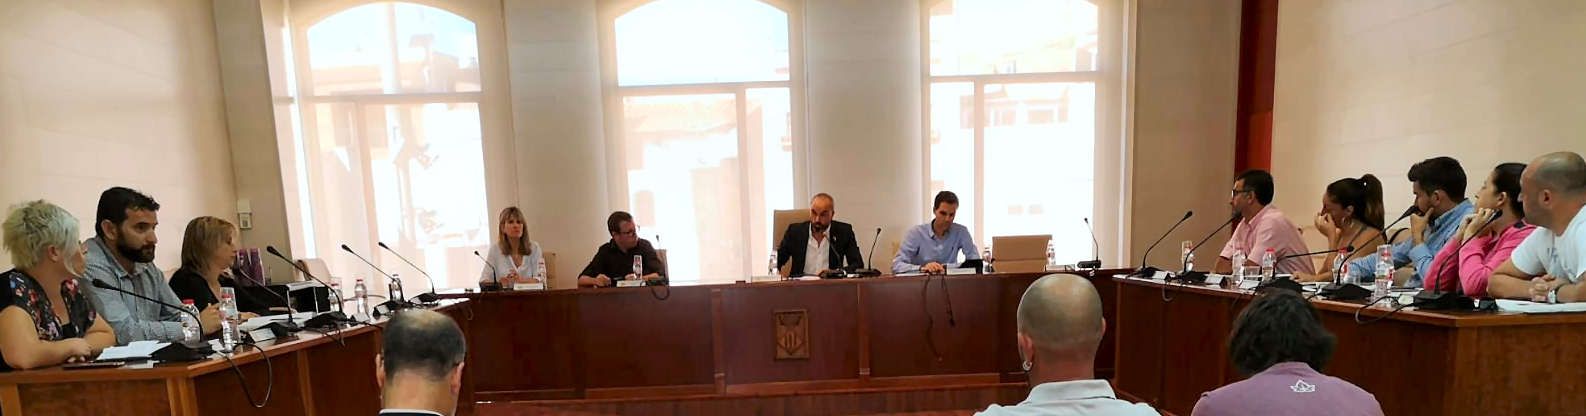 El Ple de l’Ajuntament d’Alcanar rebutja la sentència del Tribunal Suprem contra els líders polítics i socials empresonats